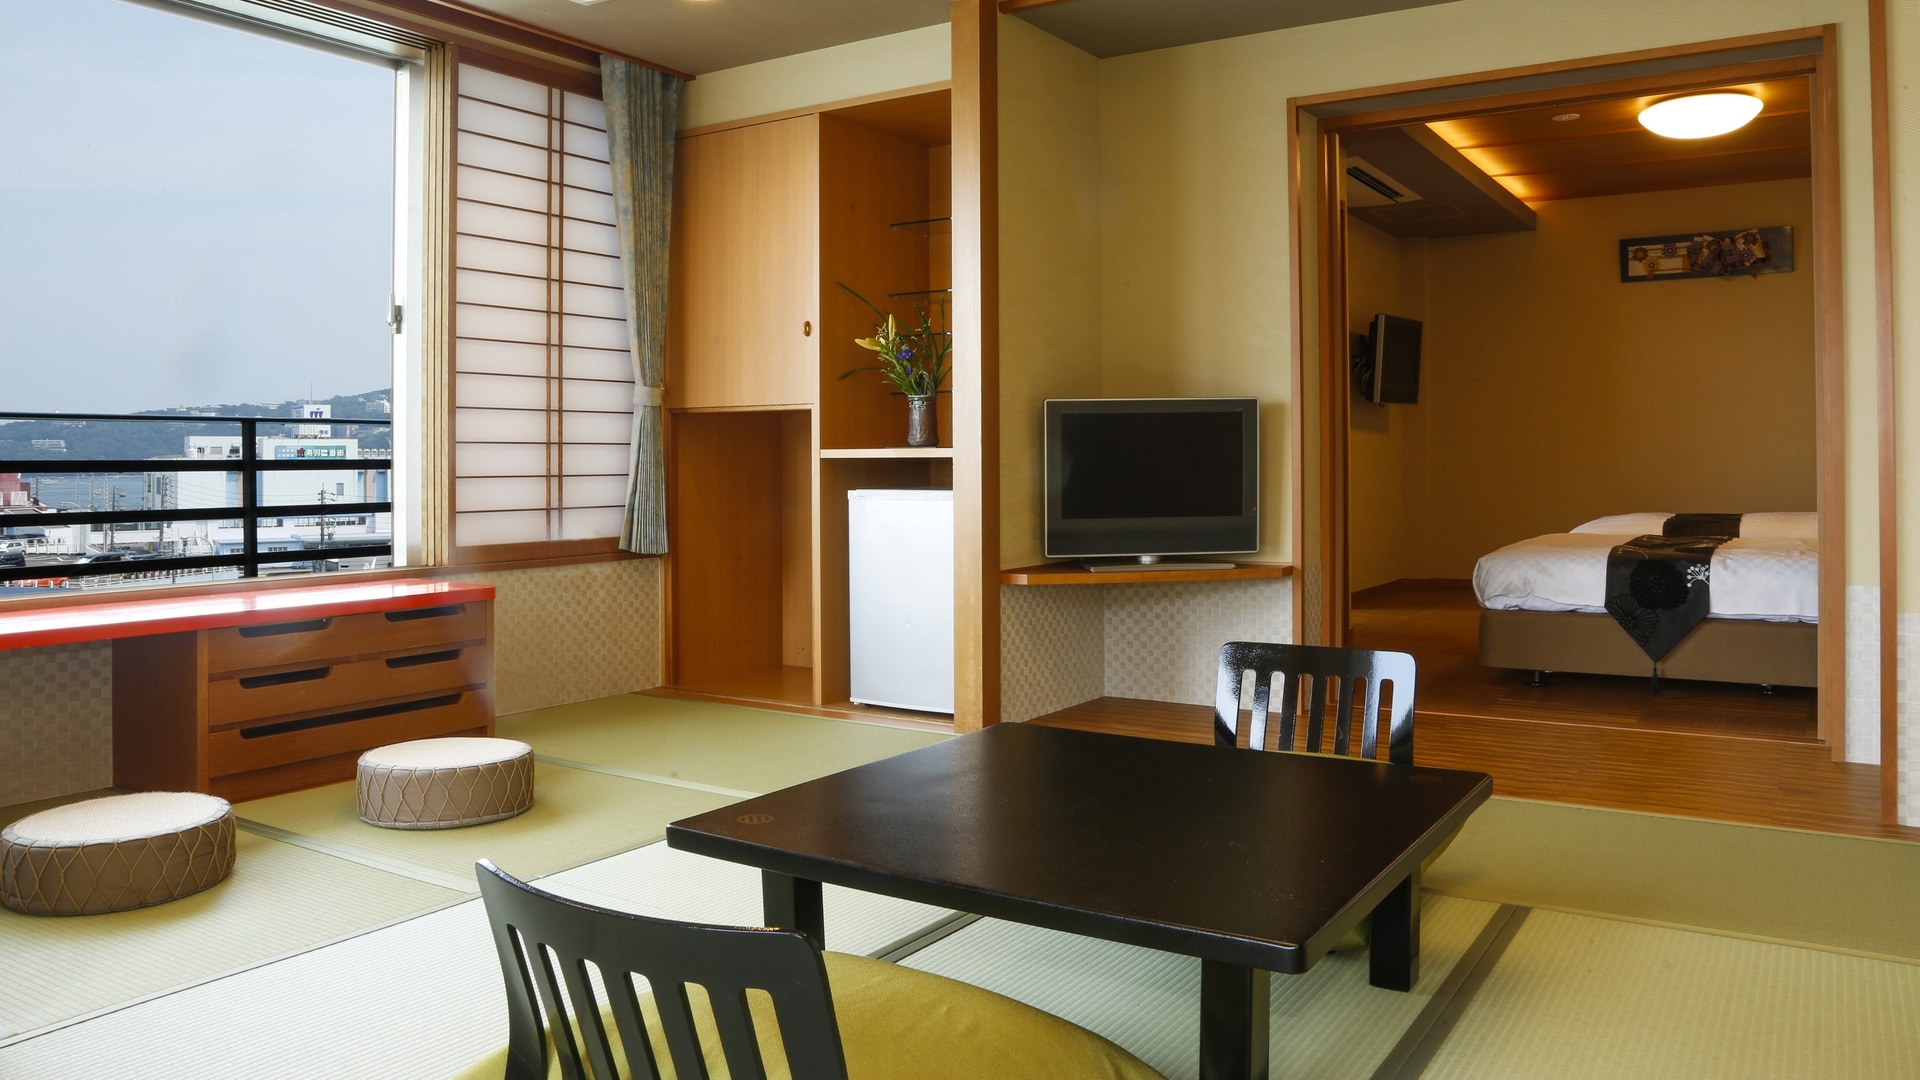 ห้องดีลักซ์สไตล์ญี่ปุ่นและตะวันตก (ตัวอย่าง) * แผนผังชั้นแตกต่างกันไปขึ้นอยู่กับห้อง